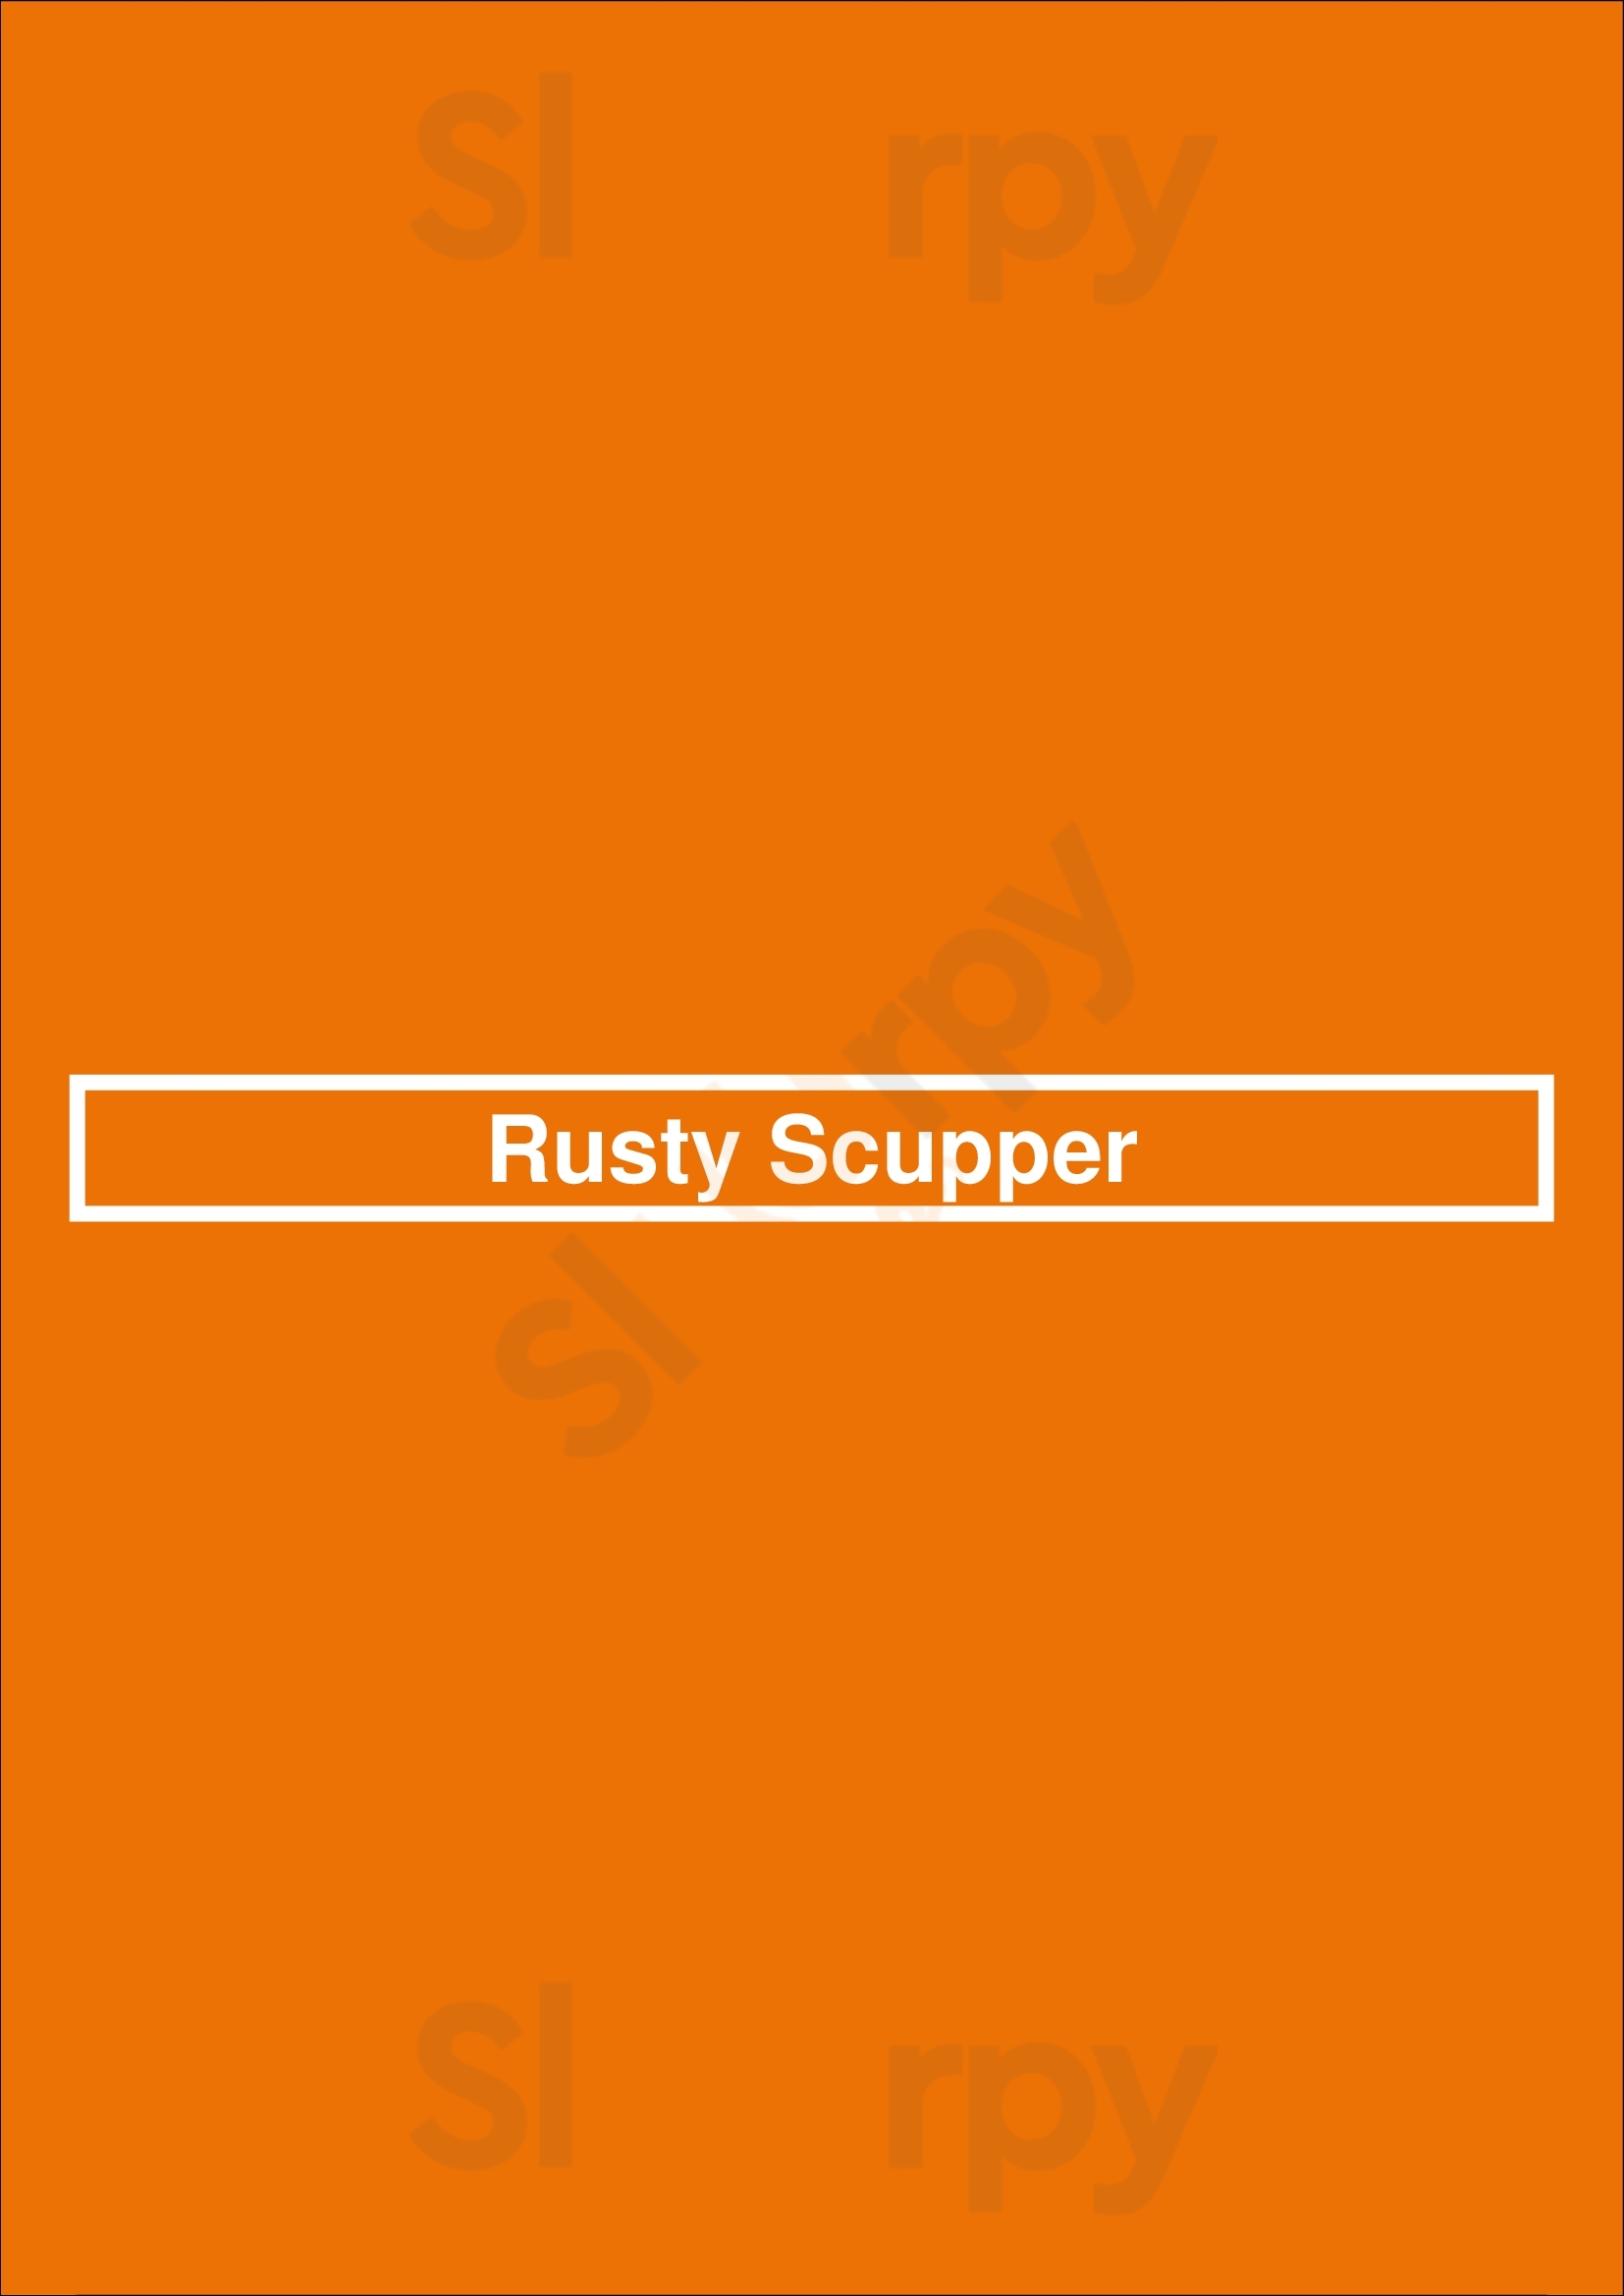 Rusty Scupper Baltimore Menu - 1